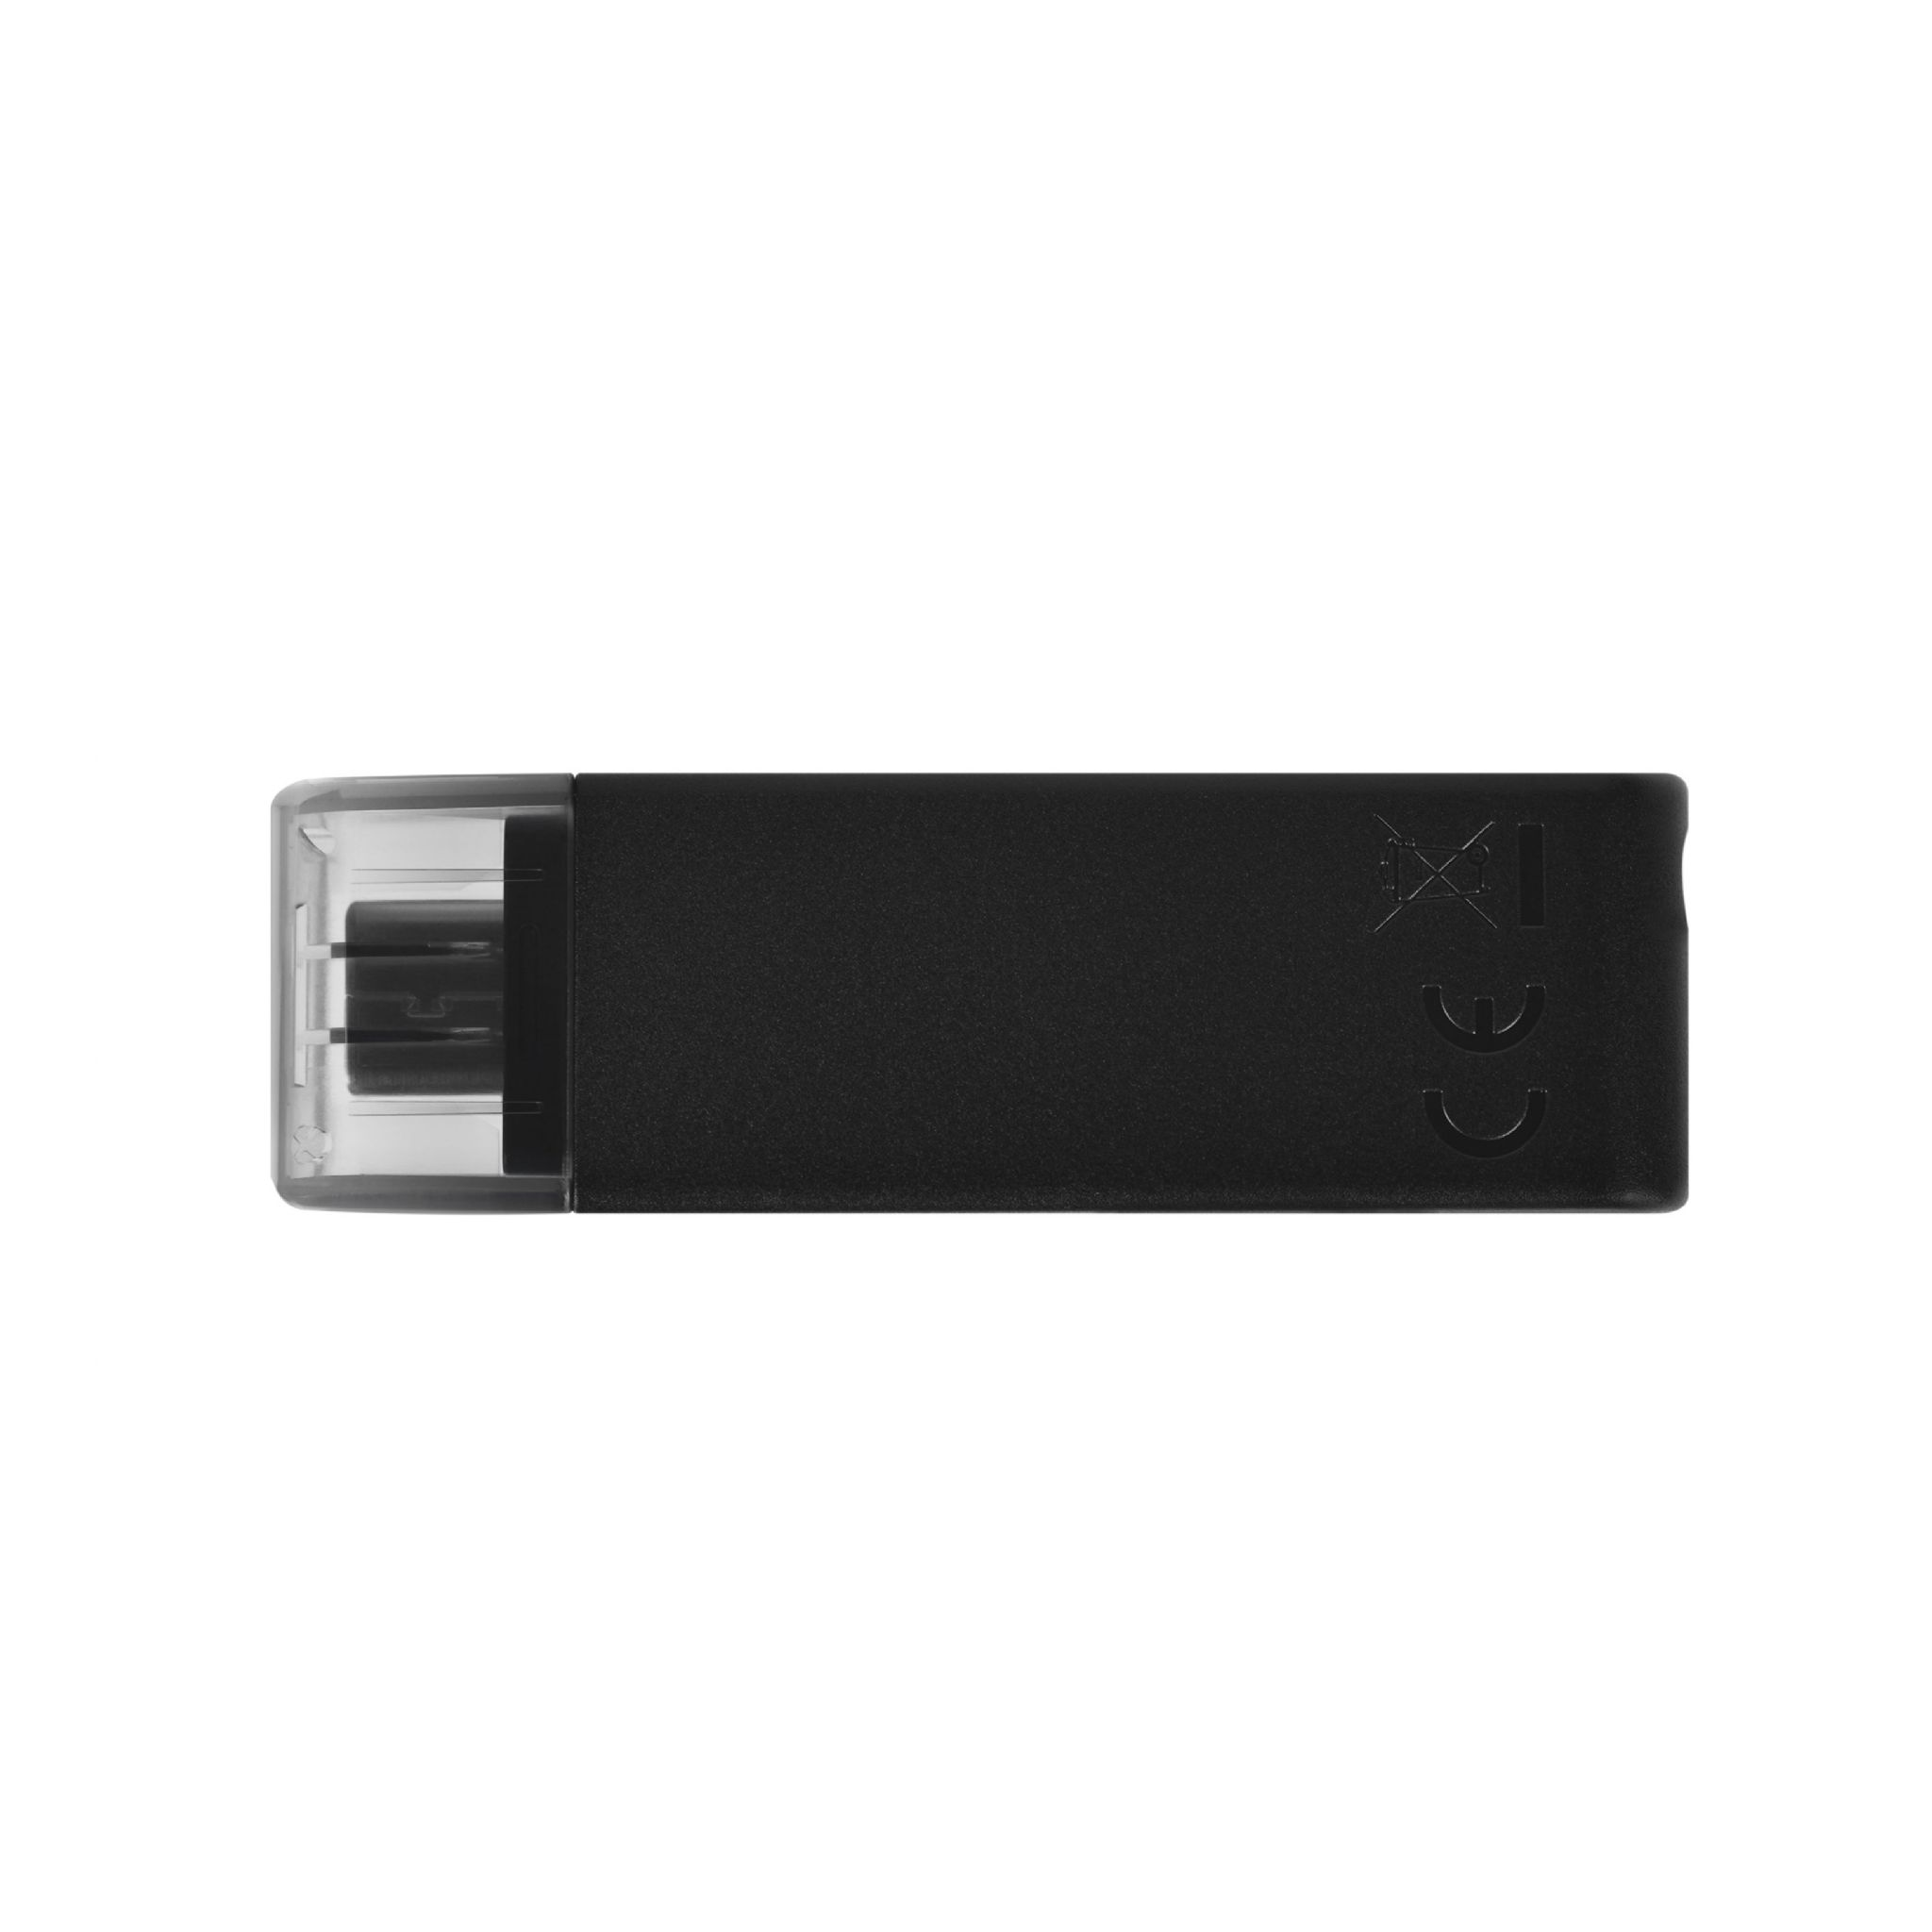 KINGSTON DT70/128GB USB Stick (schwarz, 128 GB)